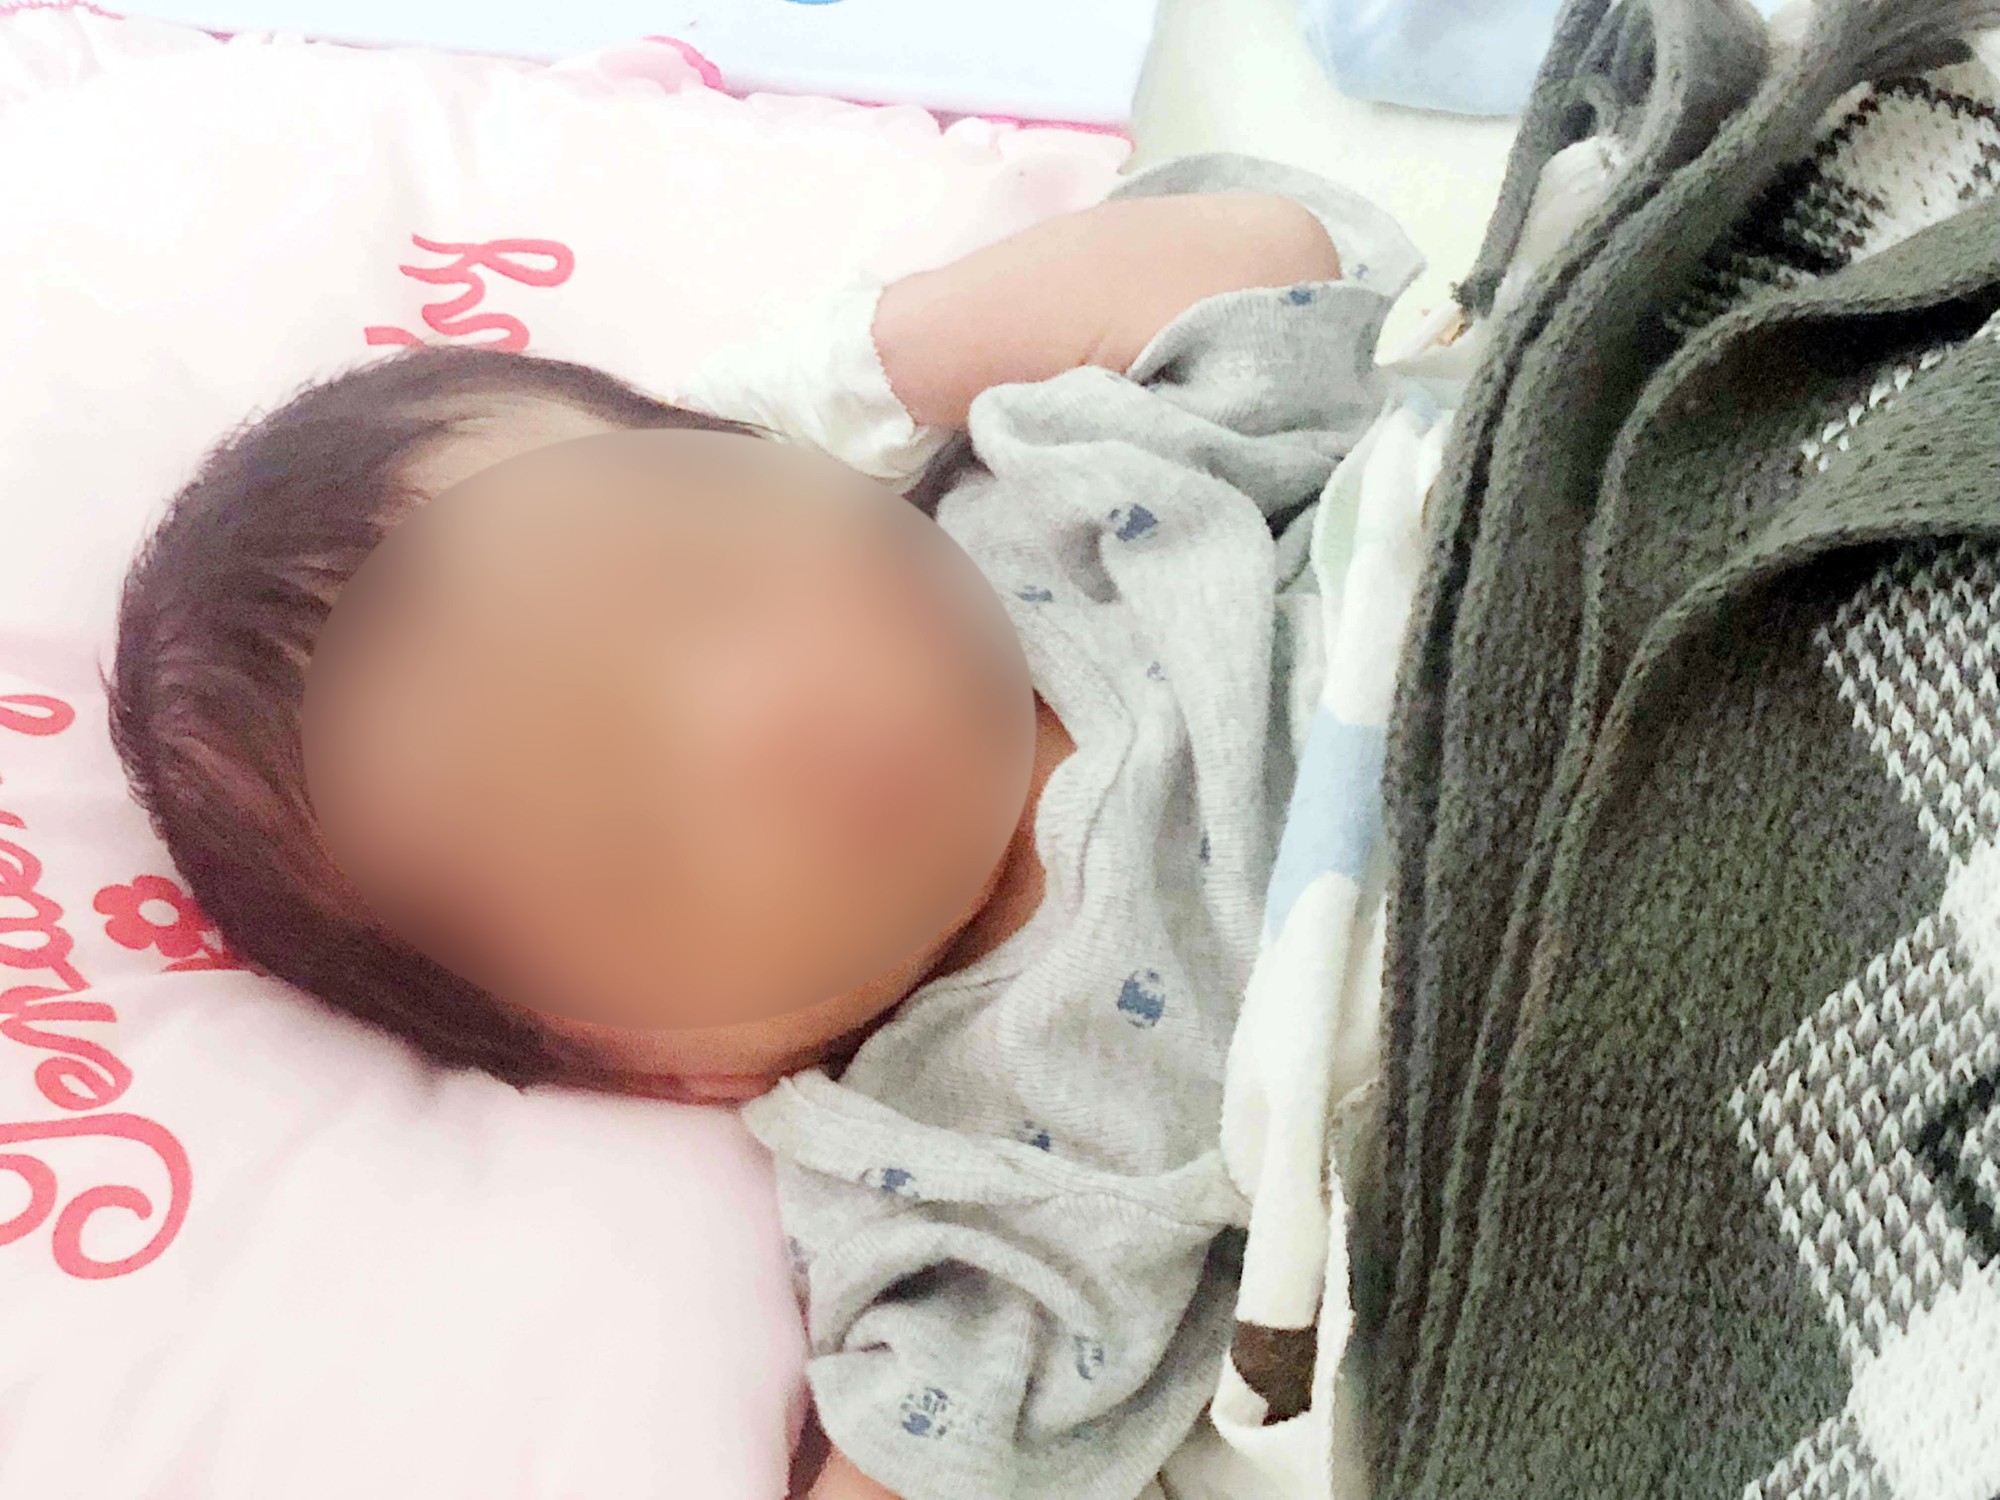 Nhiều người đến xin nhận nuôi bé sơ sinh nghi bị chôn sống ở Bình Thuận, chính quyền không nhận tiền từ thiện - Ảnh 2.